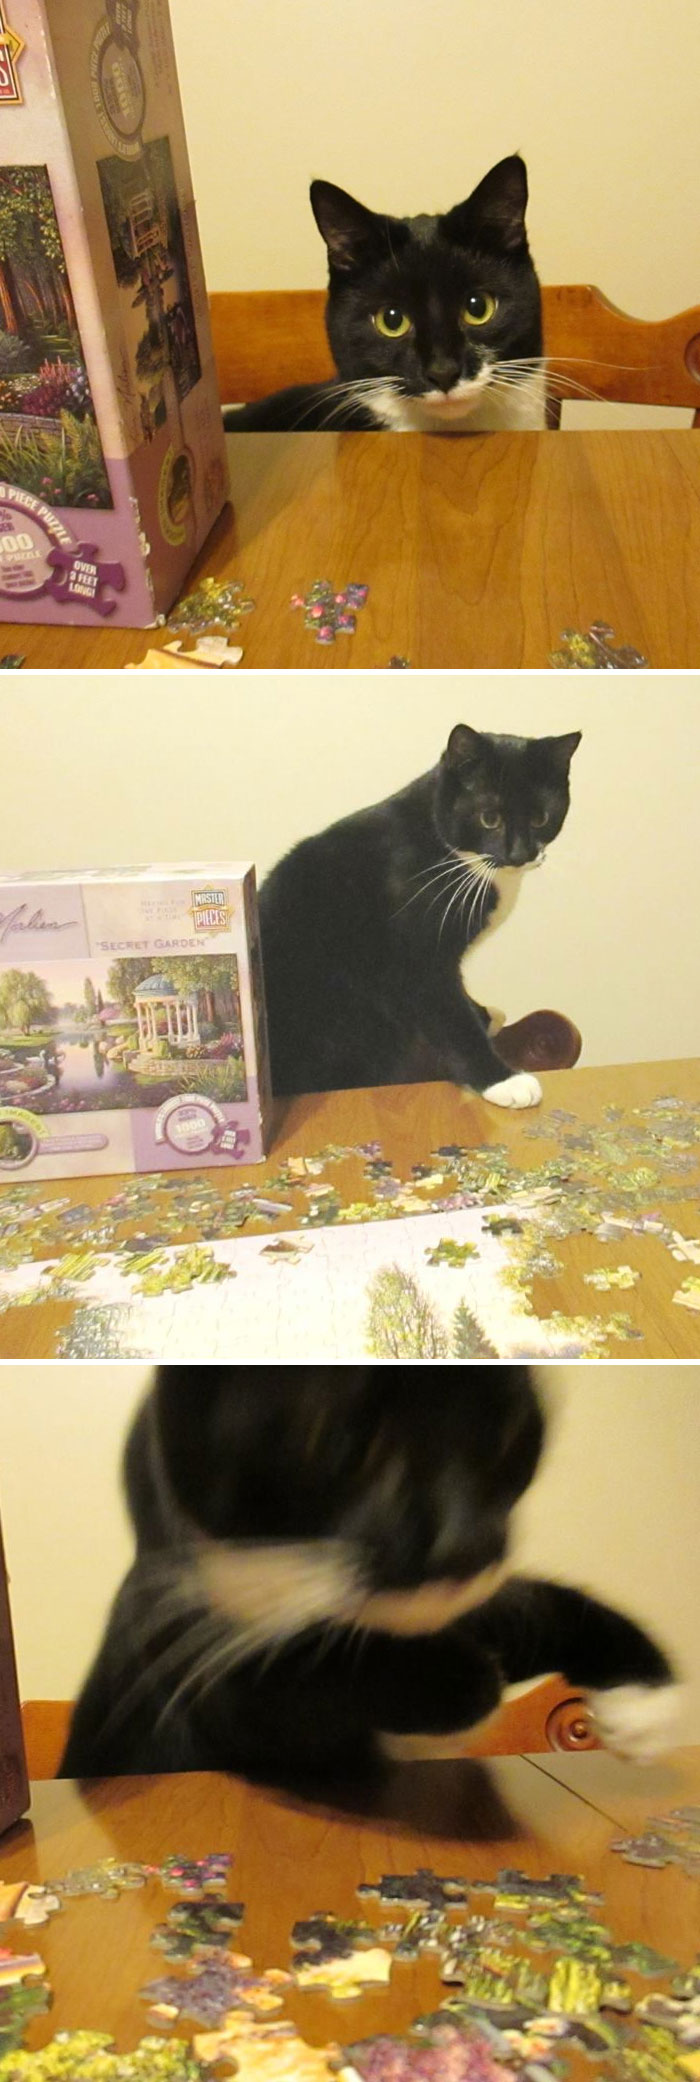 Cat Versus Puzzle